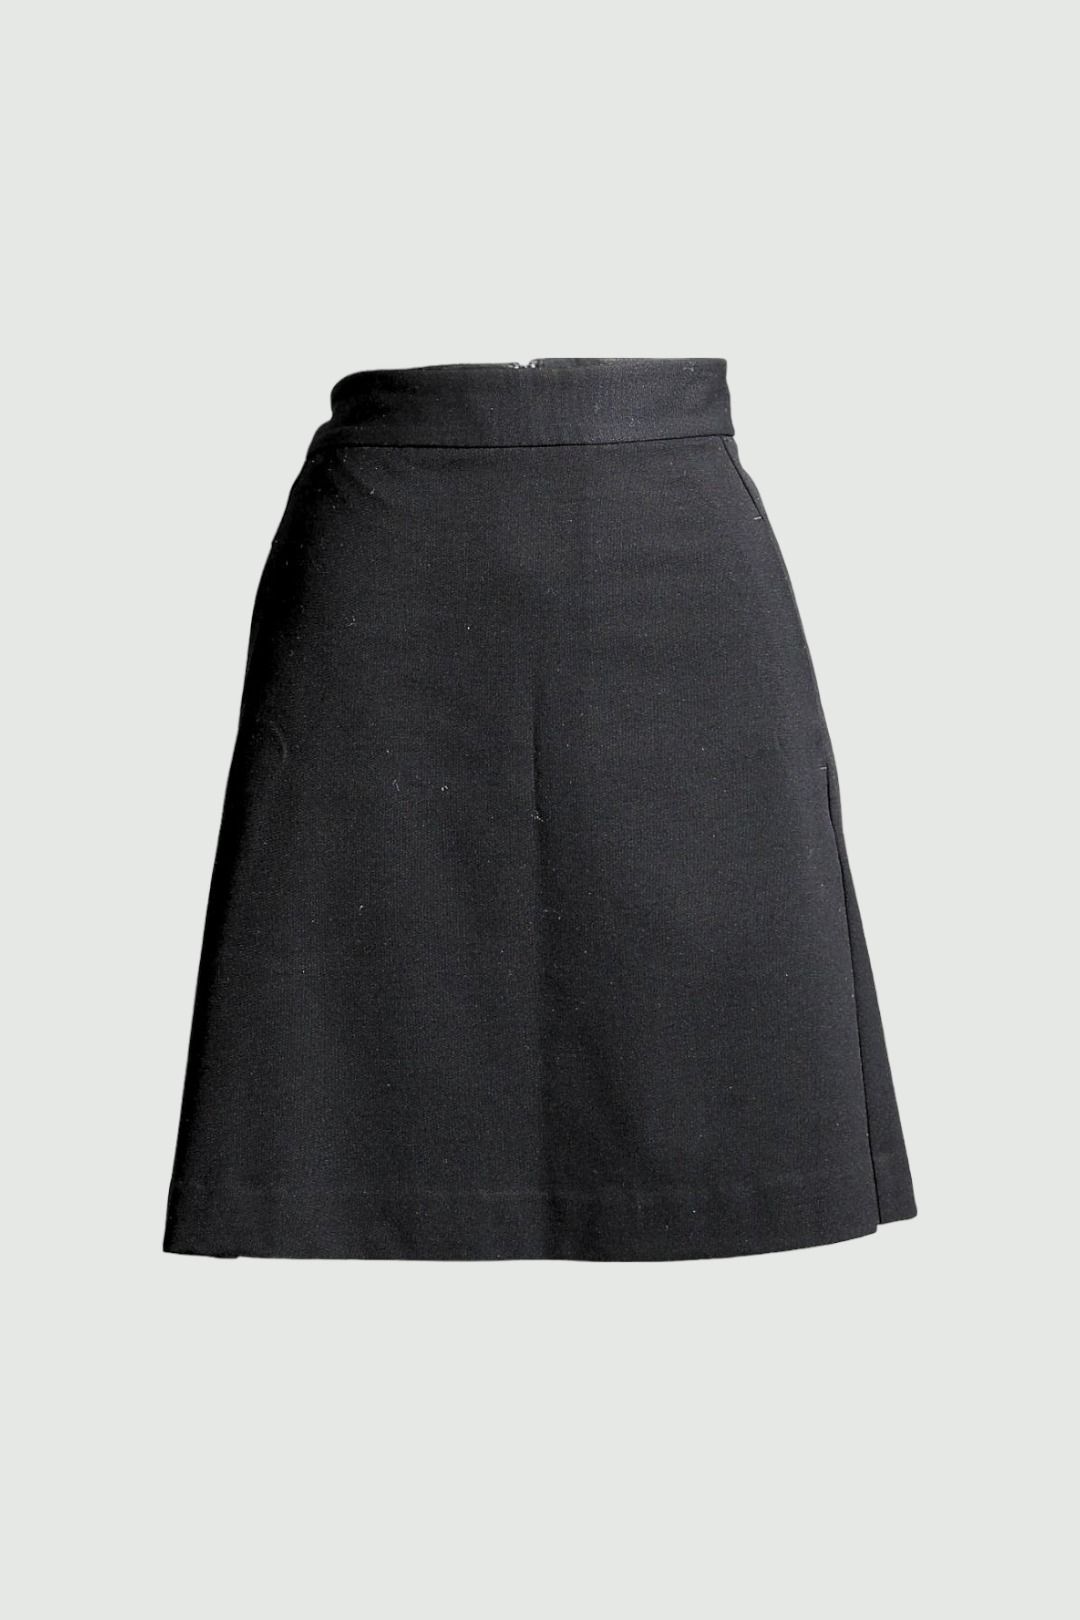 Cue Mini Skirt in Black